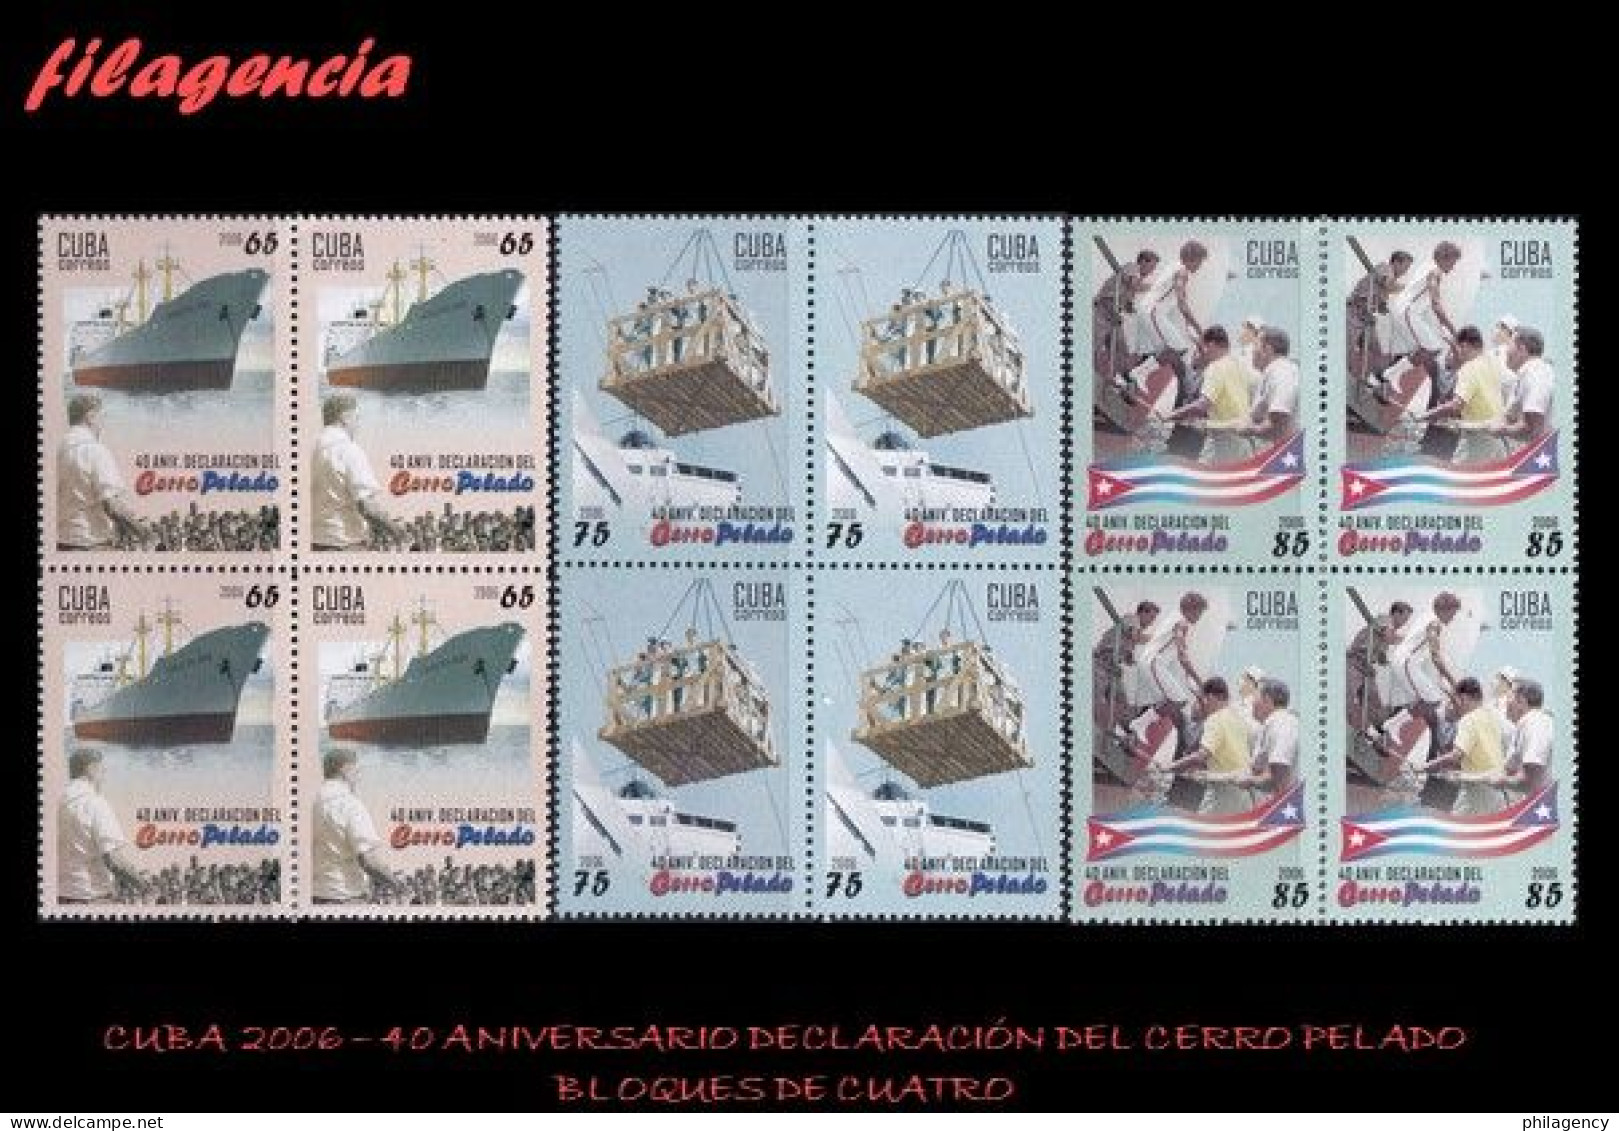 CUBA. BLOQUES DE CUATRO. 2006-14 40 ANIVERSARIO DE LA DECLARACIÓN DEL CERRO PELADO. DEPORTES - Unused Stamps